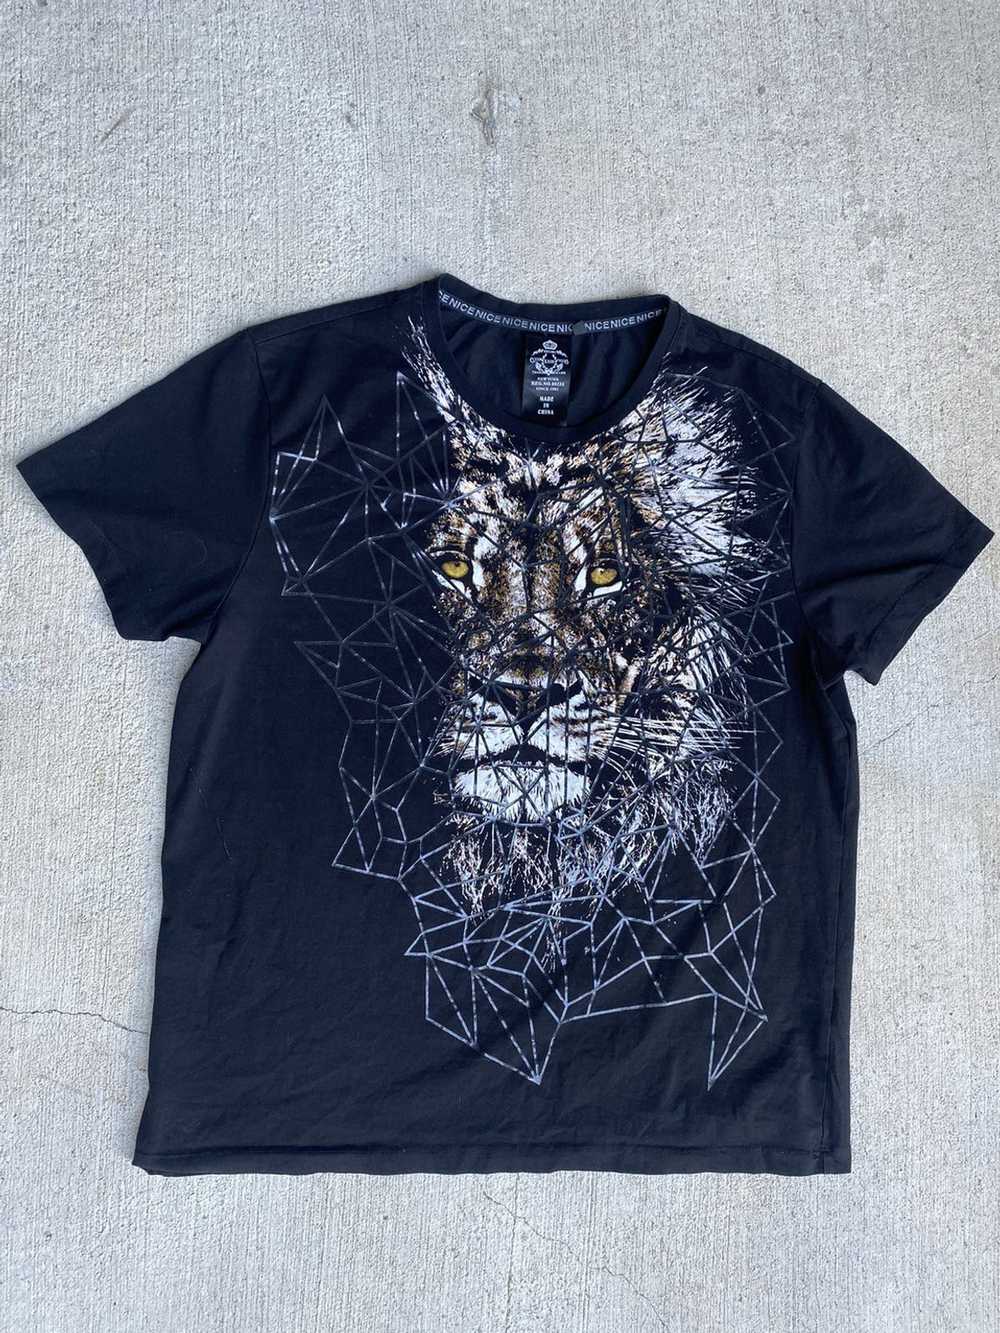 Vintage Vintage Black Lion Short Sleeve T-Shirt - image 1